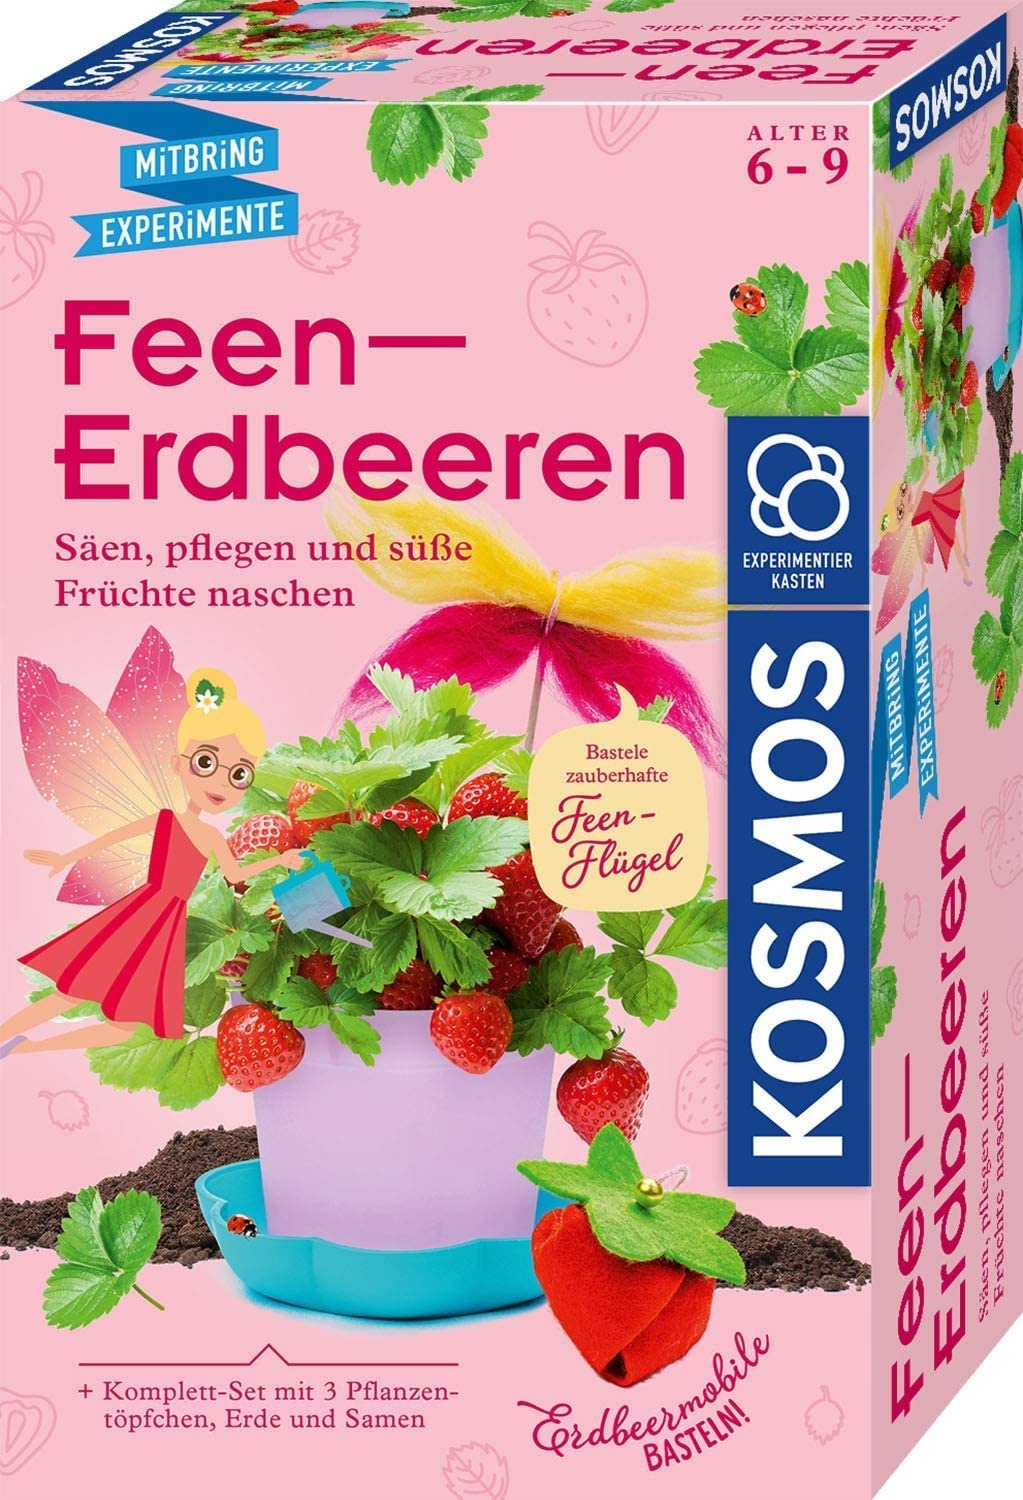 KOSMOS 657819 Feen-Erdbeeren Experimentierset für Kinder, Mädchen ab 6 Jahren, Planzset für Kinder, Experimentier-Set für Kinder